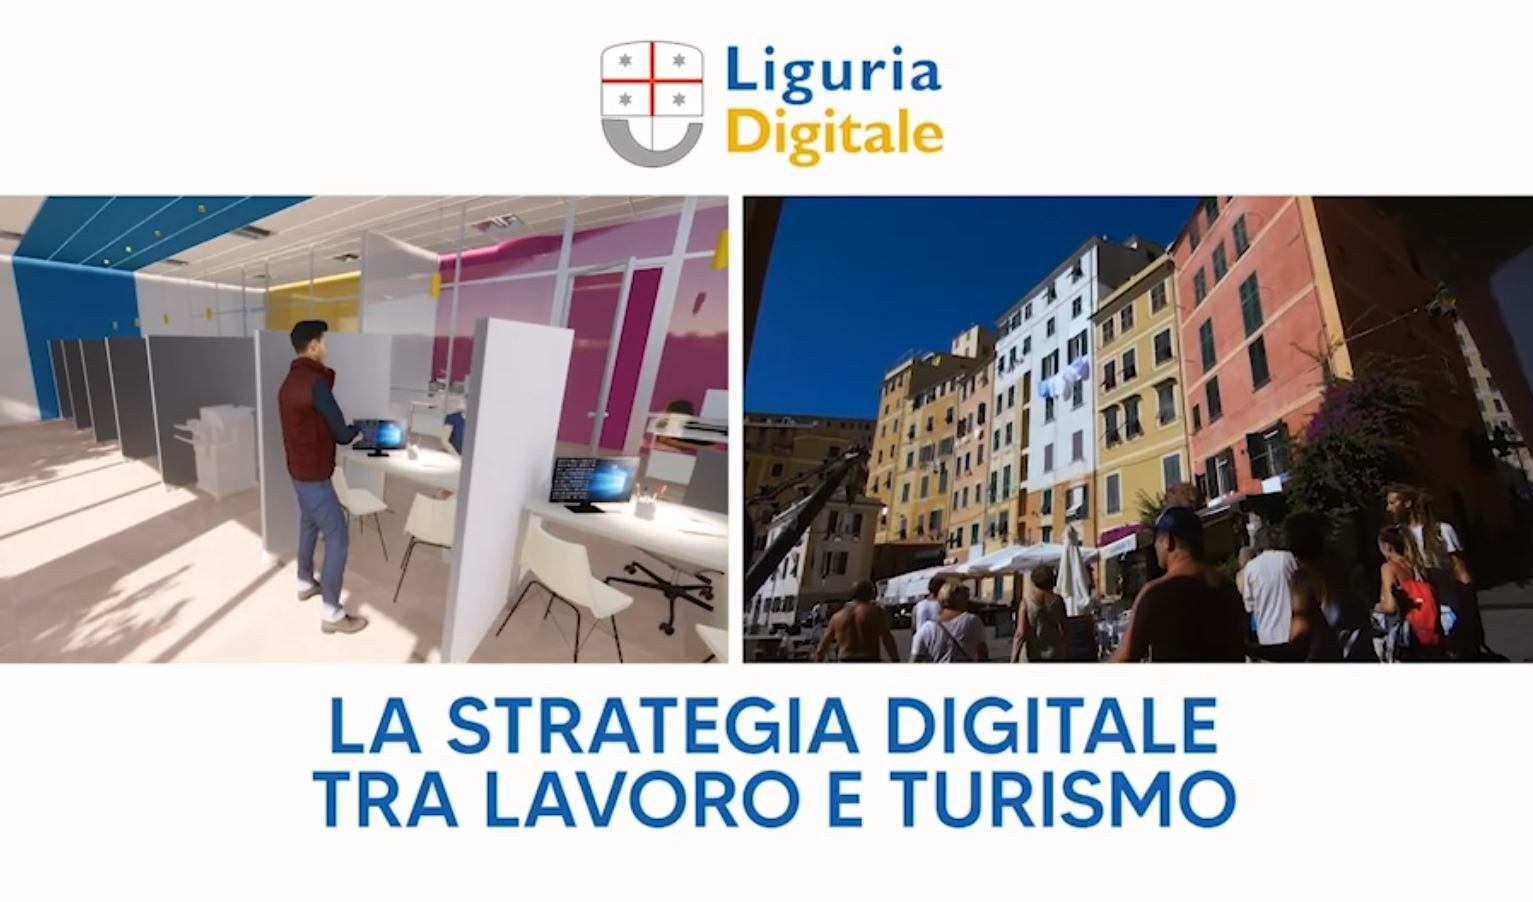 Liguria Digitale, la strategia digitale tra lavoro e turismo